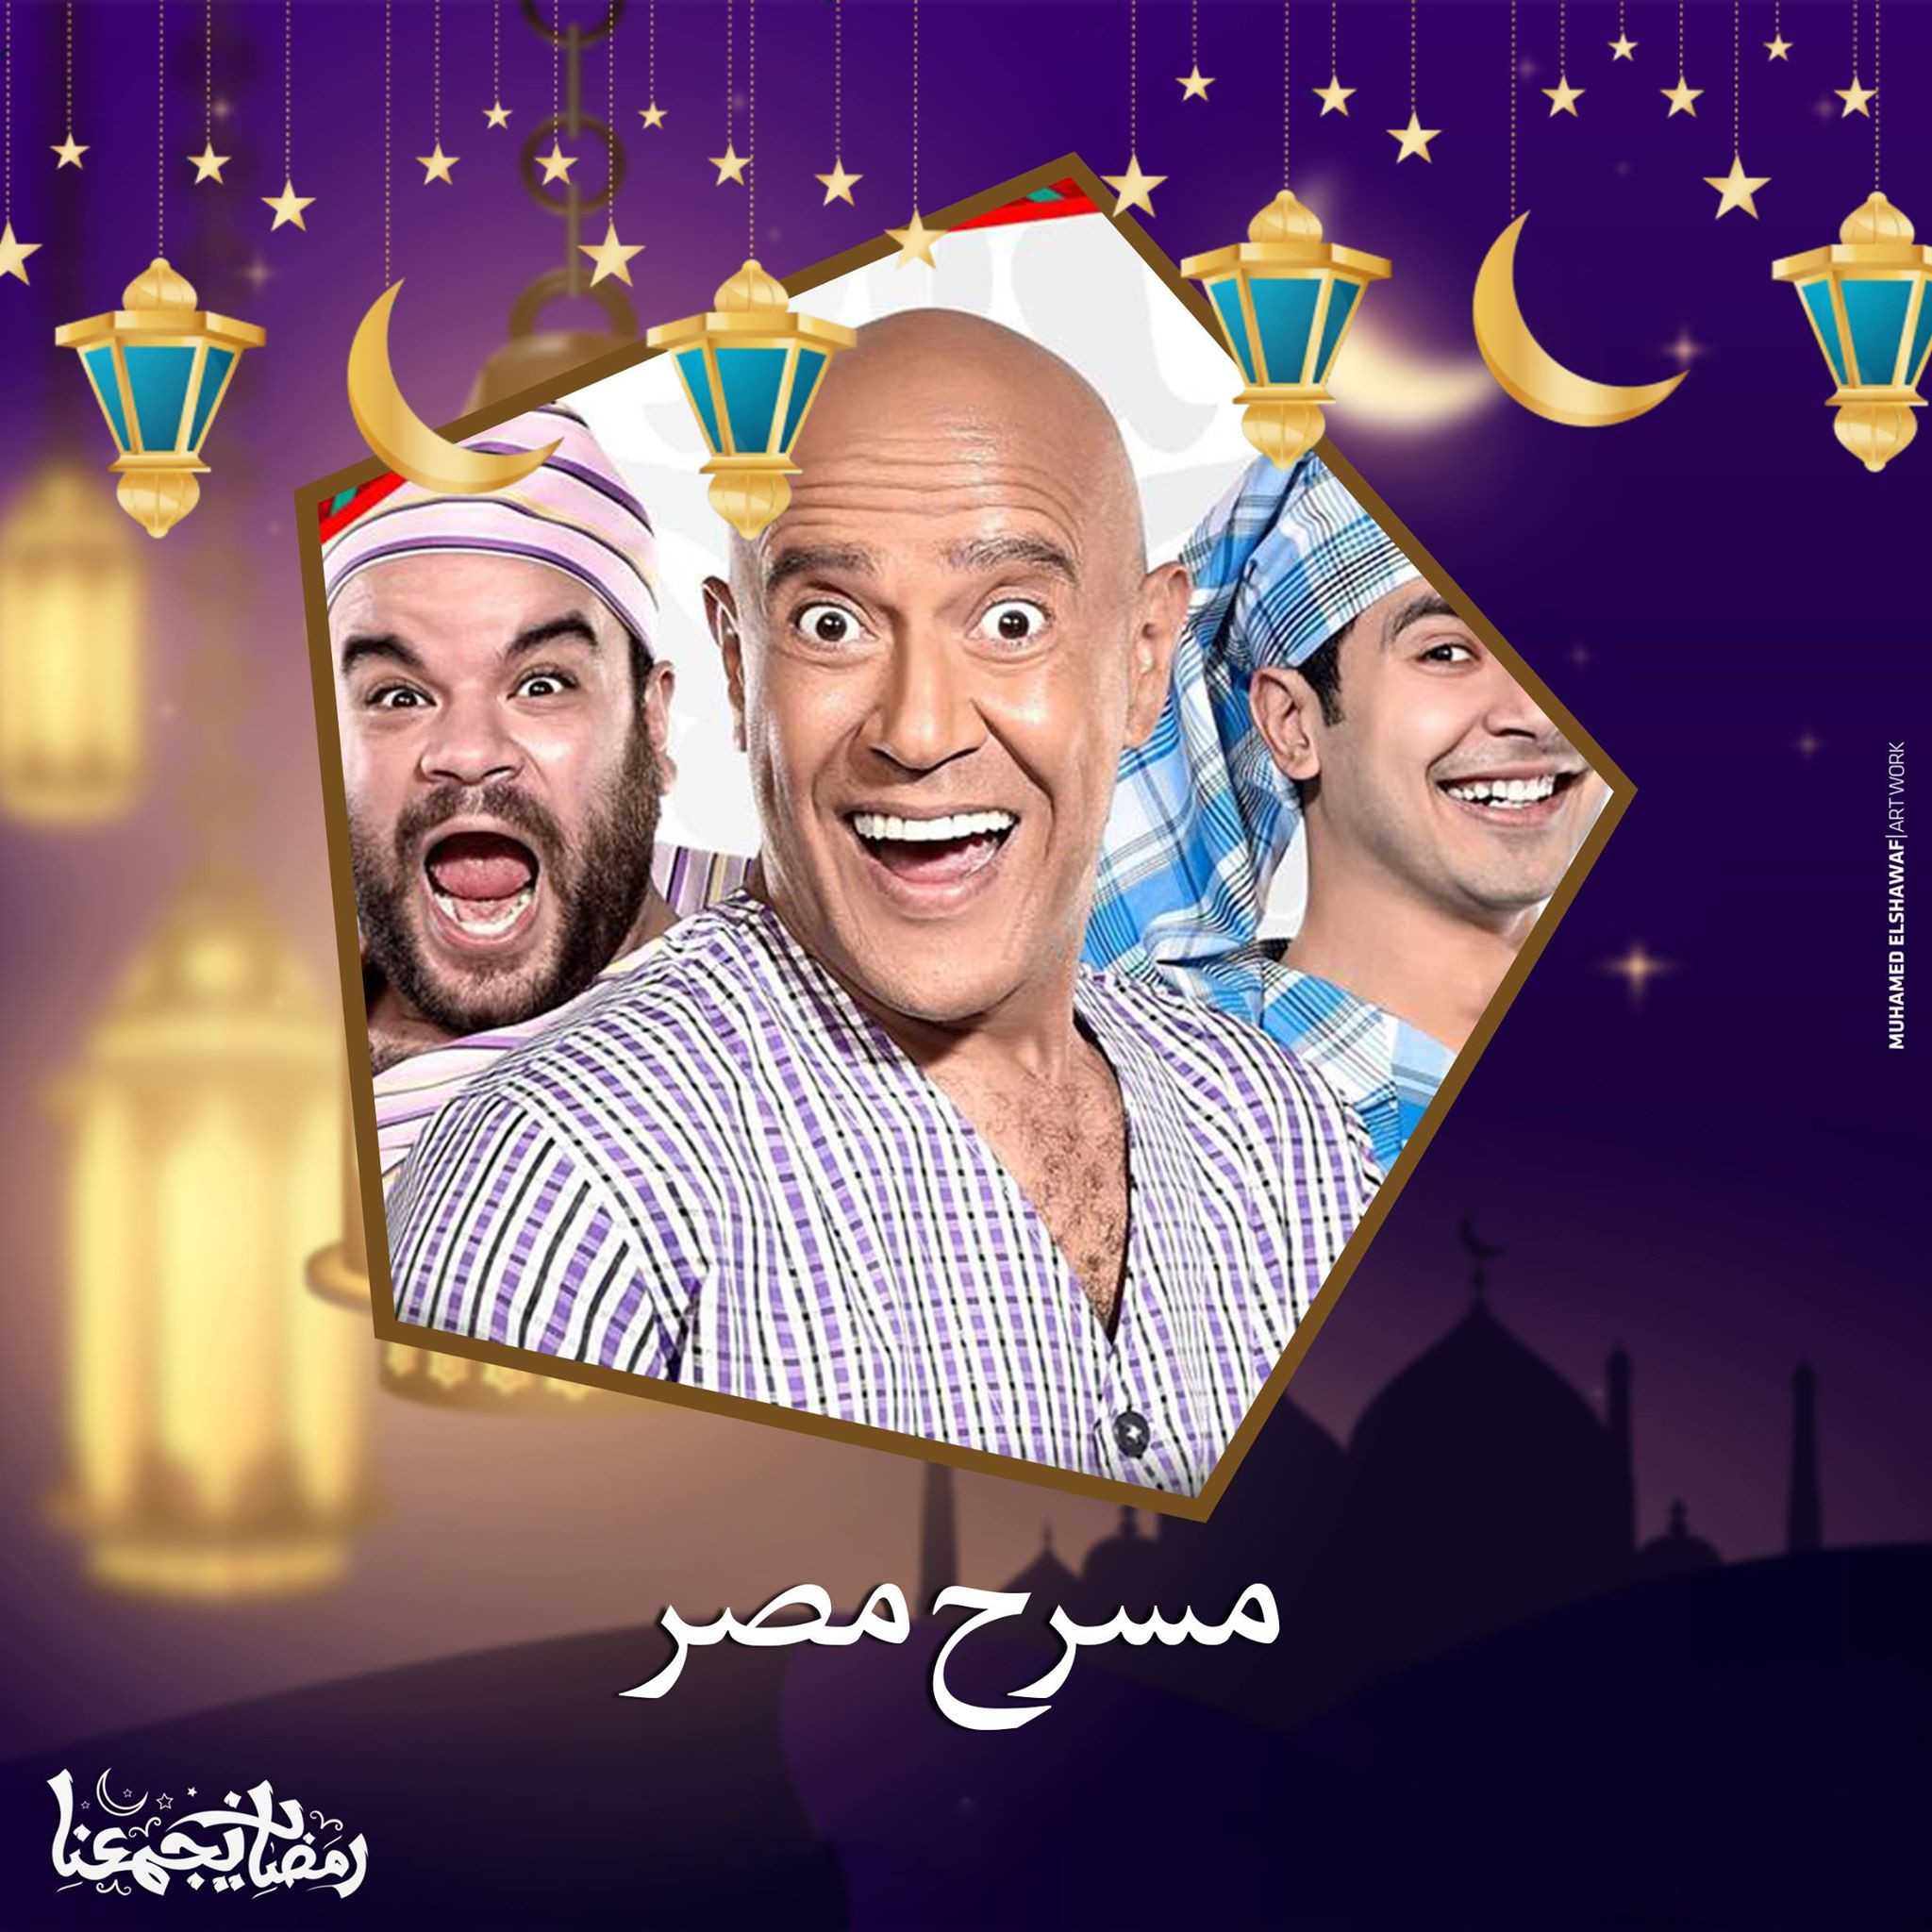 برنامج مسرح مصر الموسم الرابع حلقة 1 مسرحية الخاتم